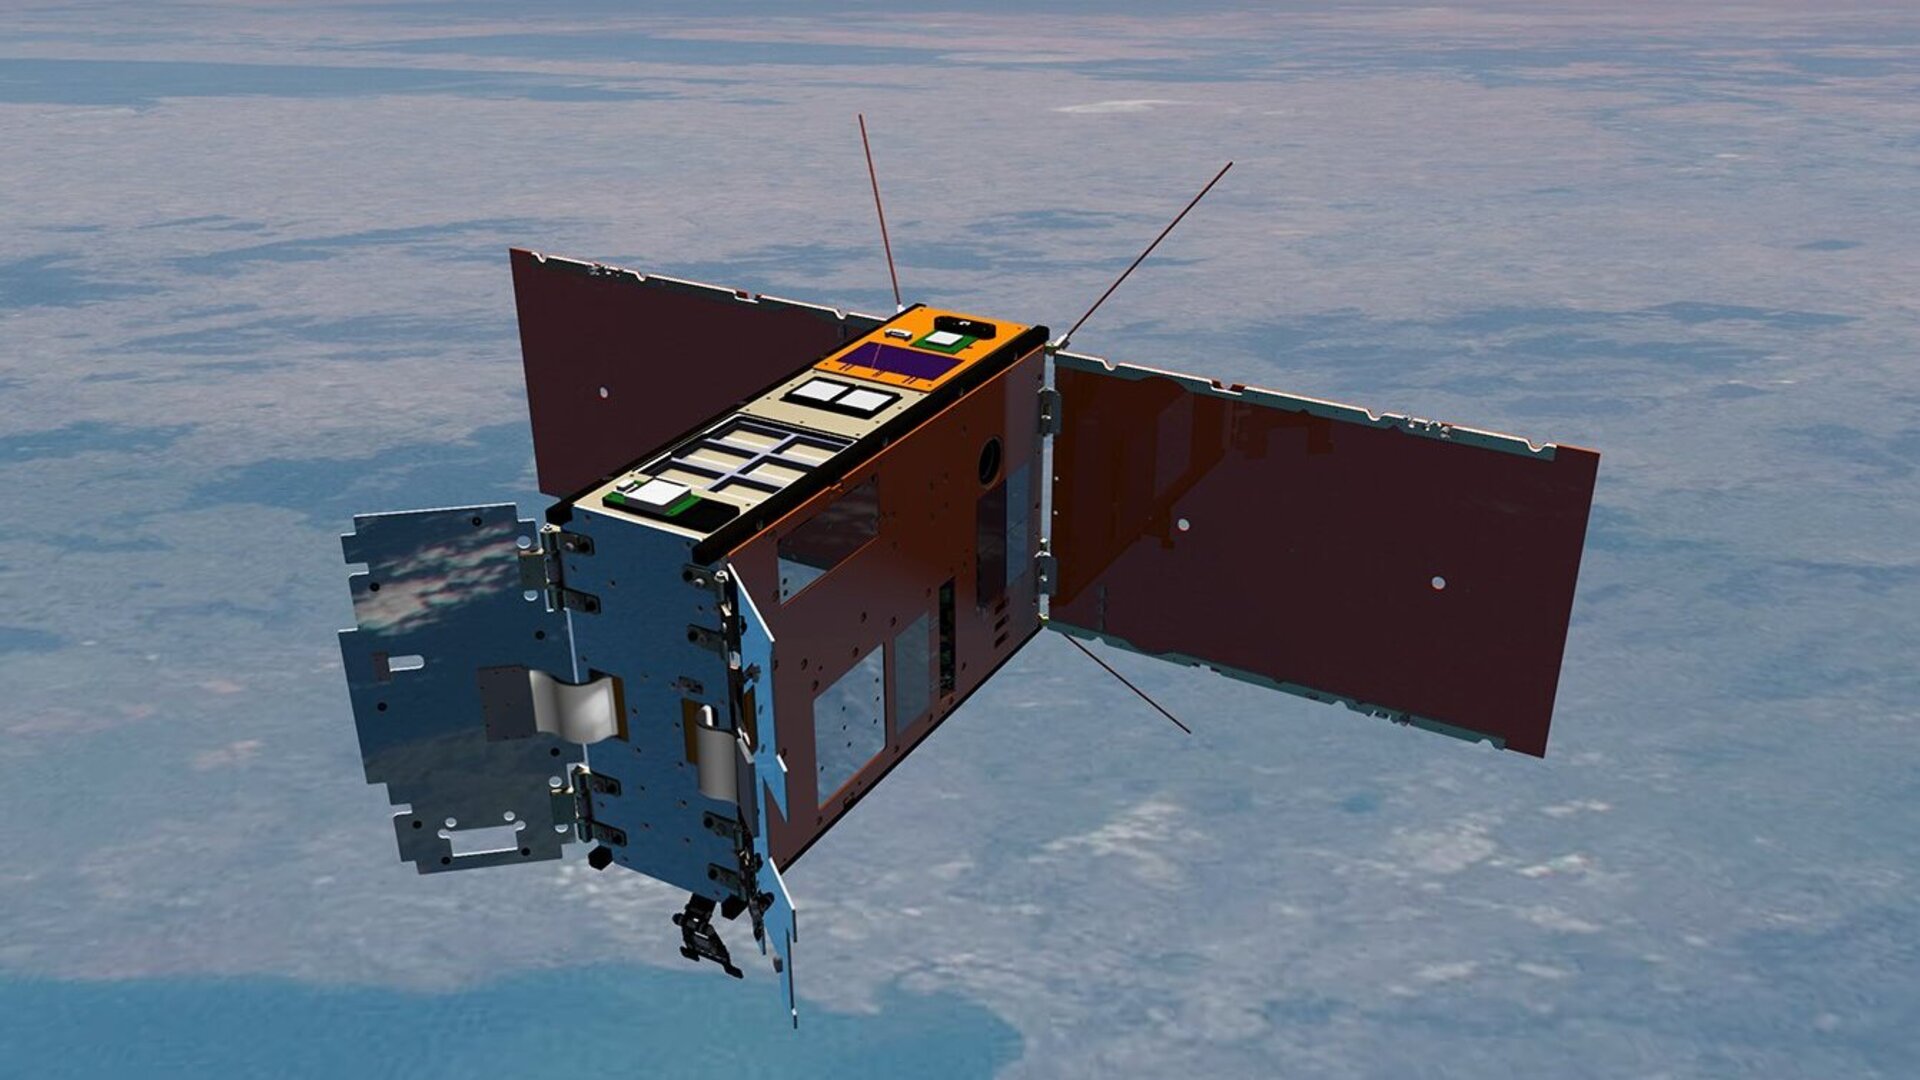 ASI - Perfetto lancio per il satellite australiano SpIRIT, realizzato con il contributo di ASI